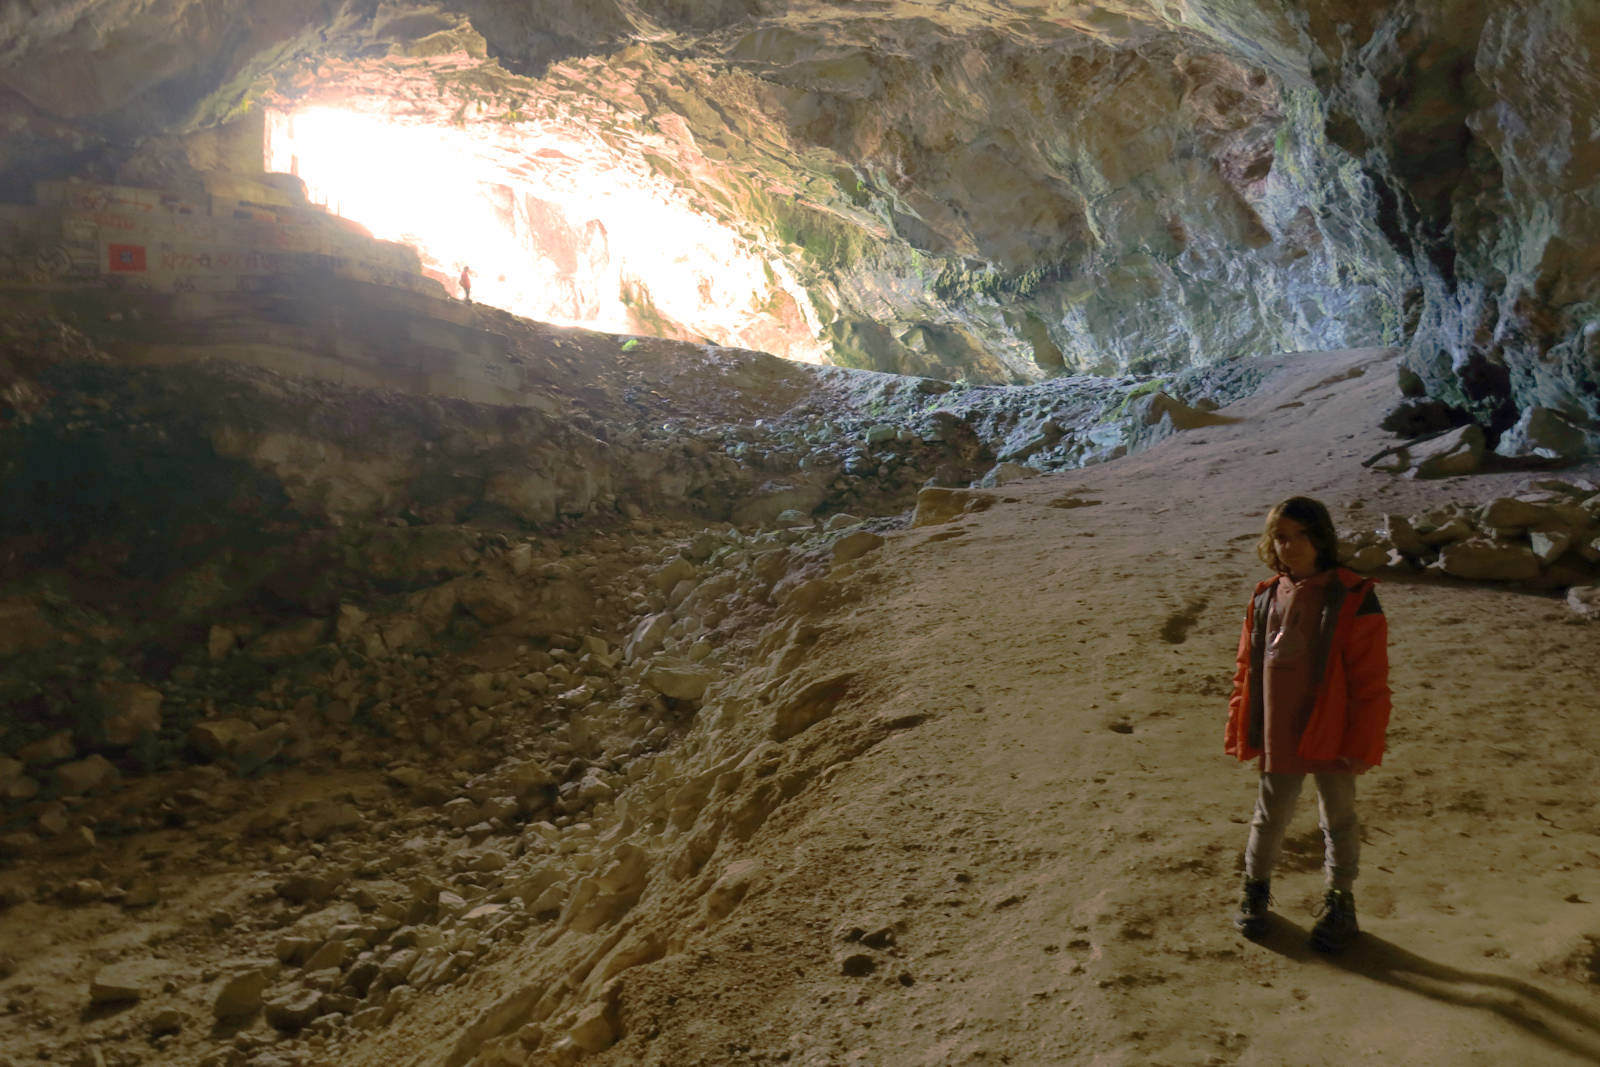 Πεντέλη topoguide: Στη Σπηλιά του Νταβέλη